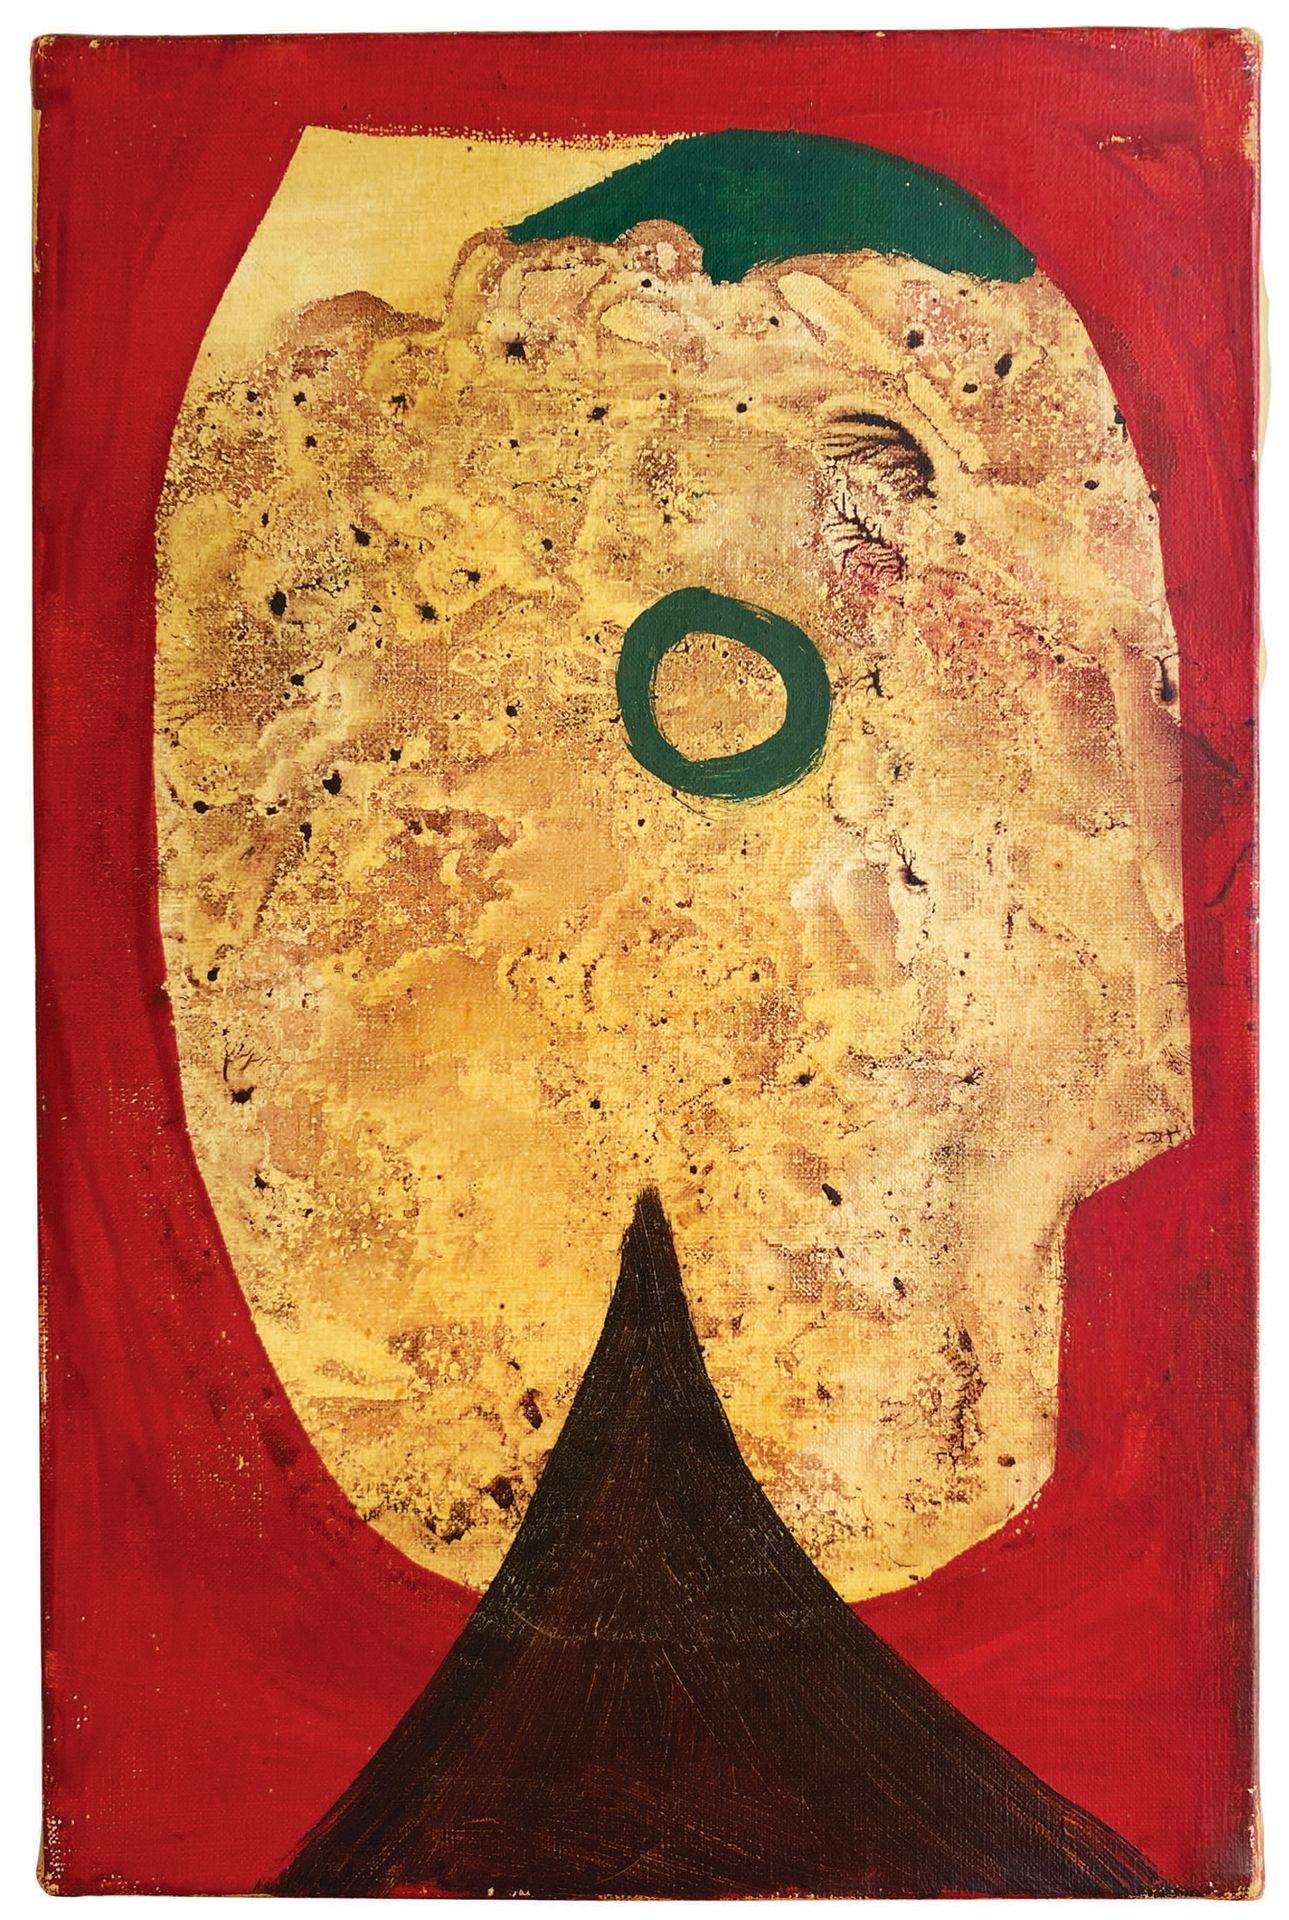 Oscar DOMINGUEZ. Ohne Titel. 1957 ?
Öl auf Leinwand (23,8 x 15,7 cm).
Schöne sur&hellip;